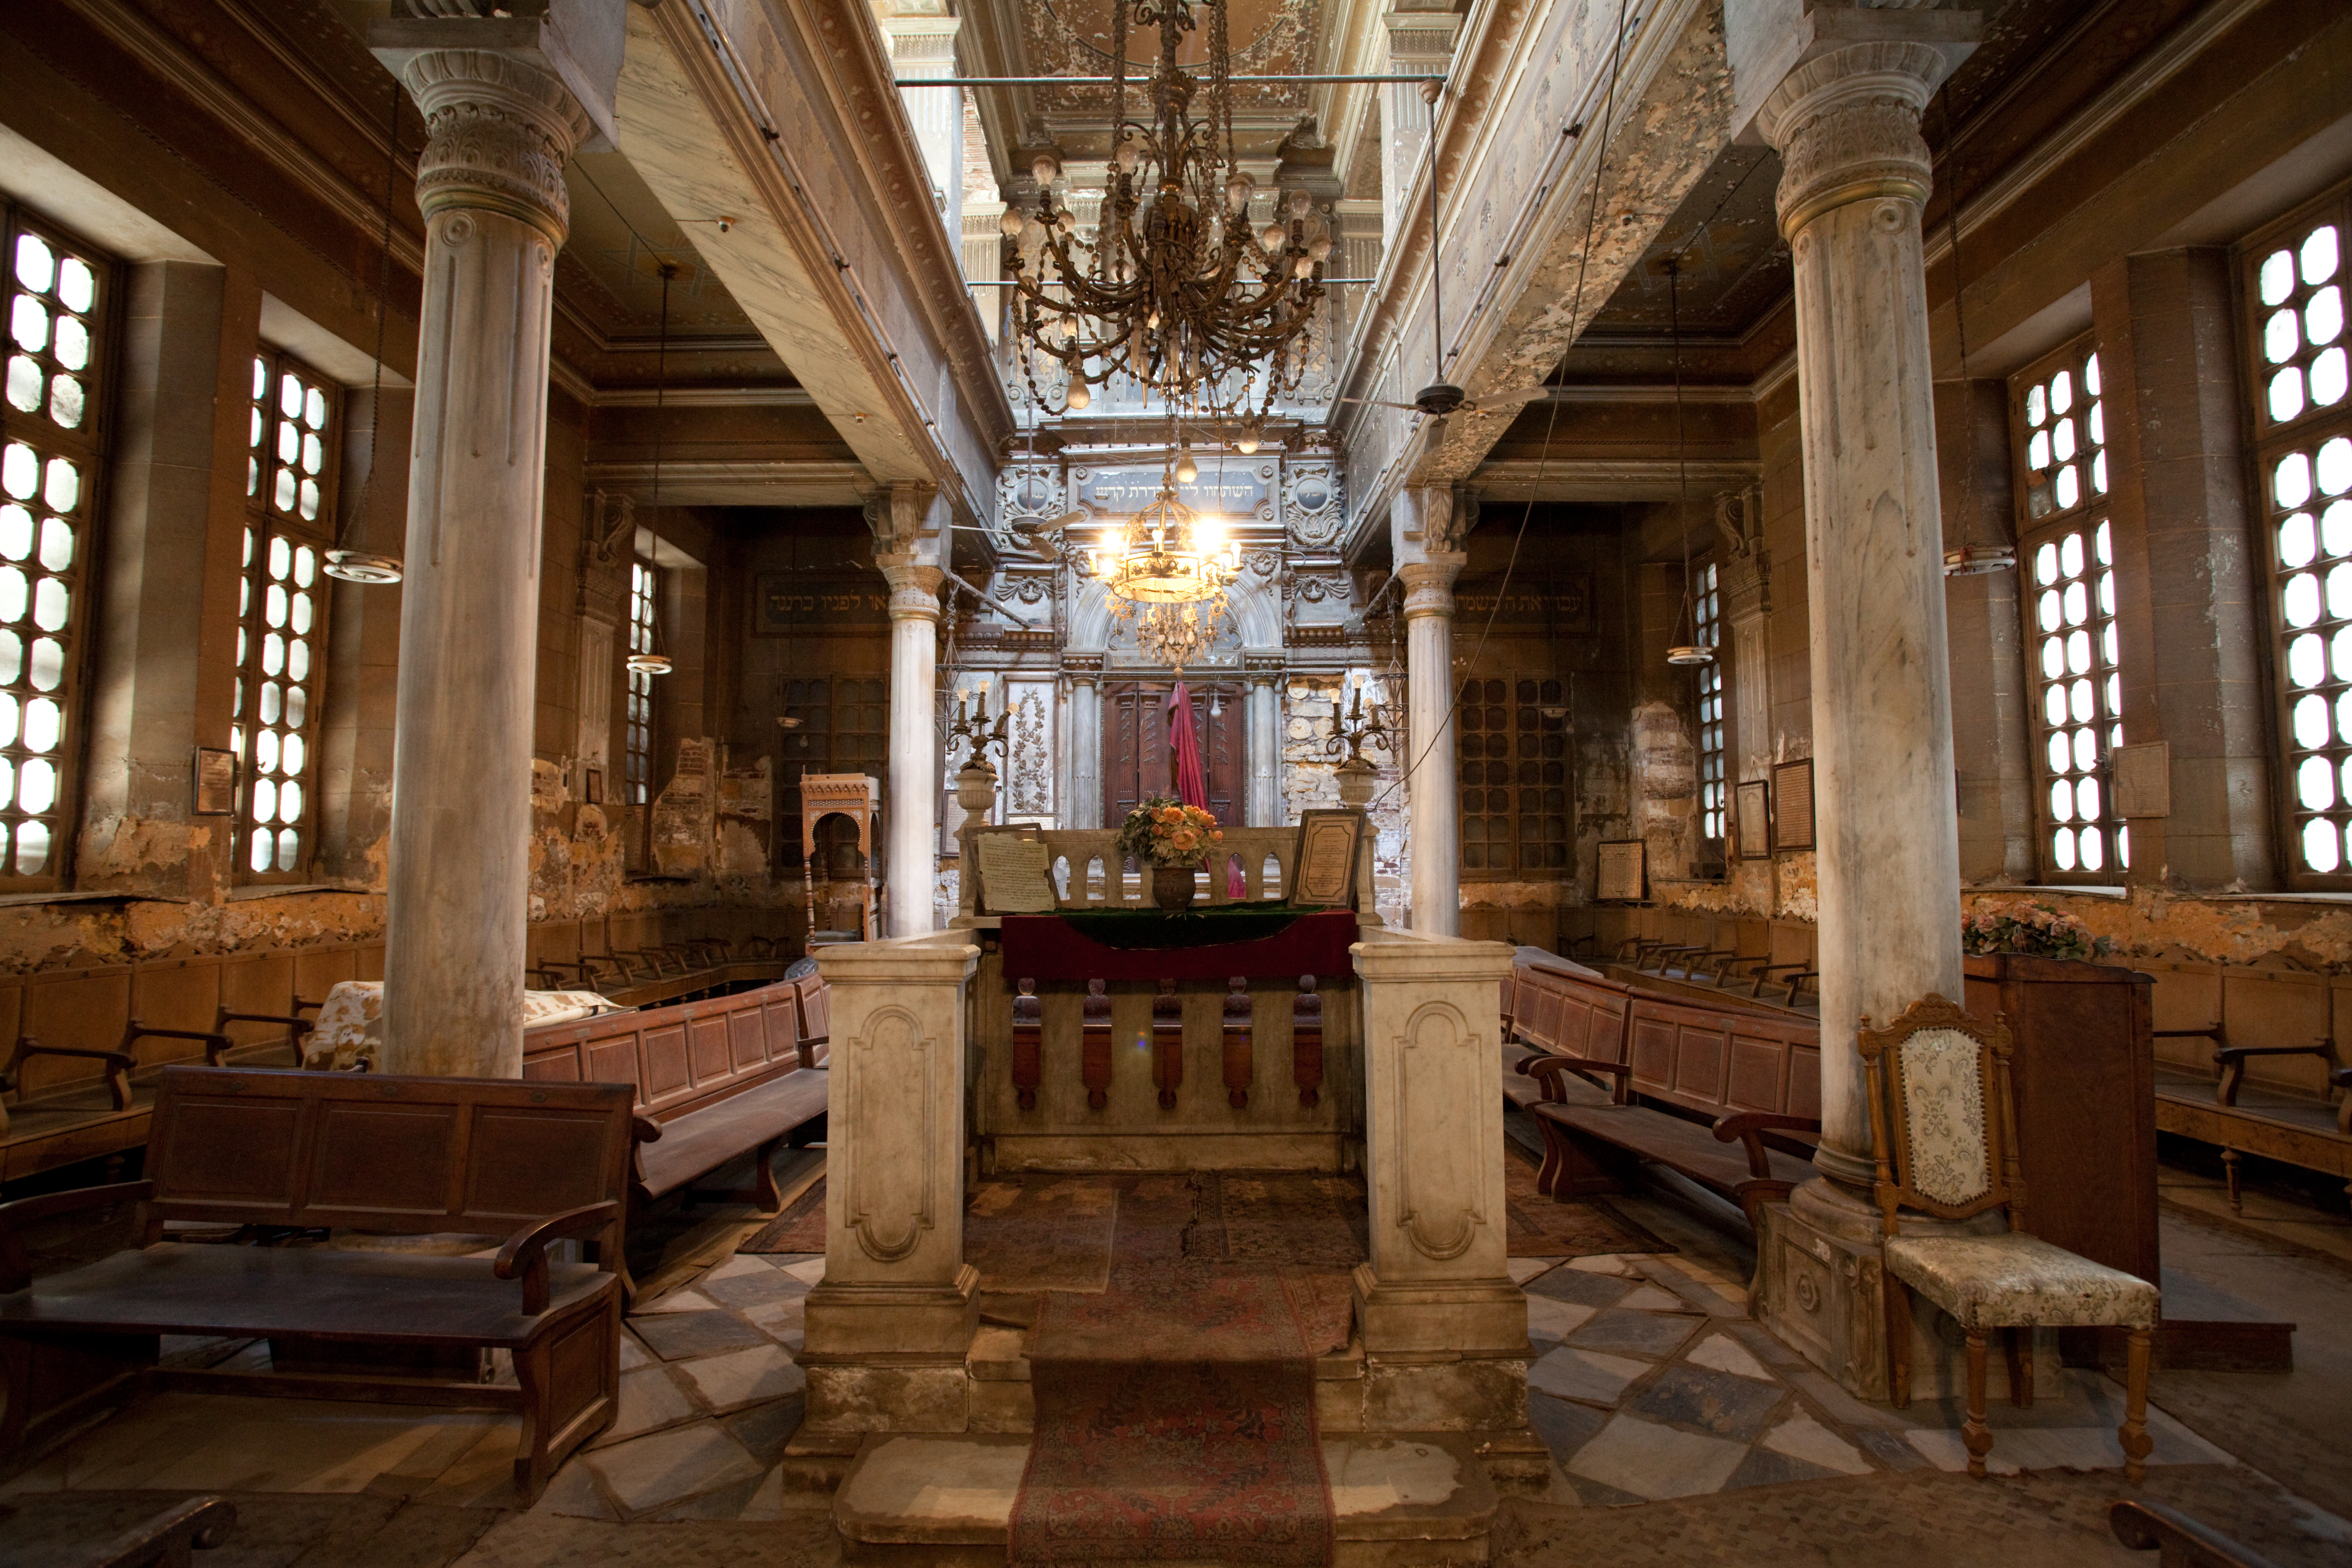 Etz Haim (Hanan) Synagogue at Cairo, Egypt